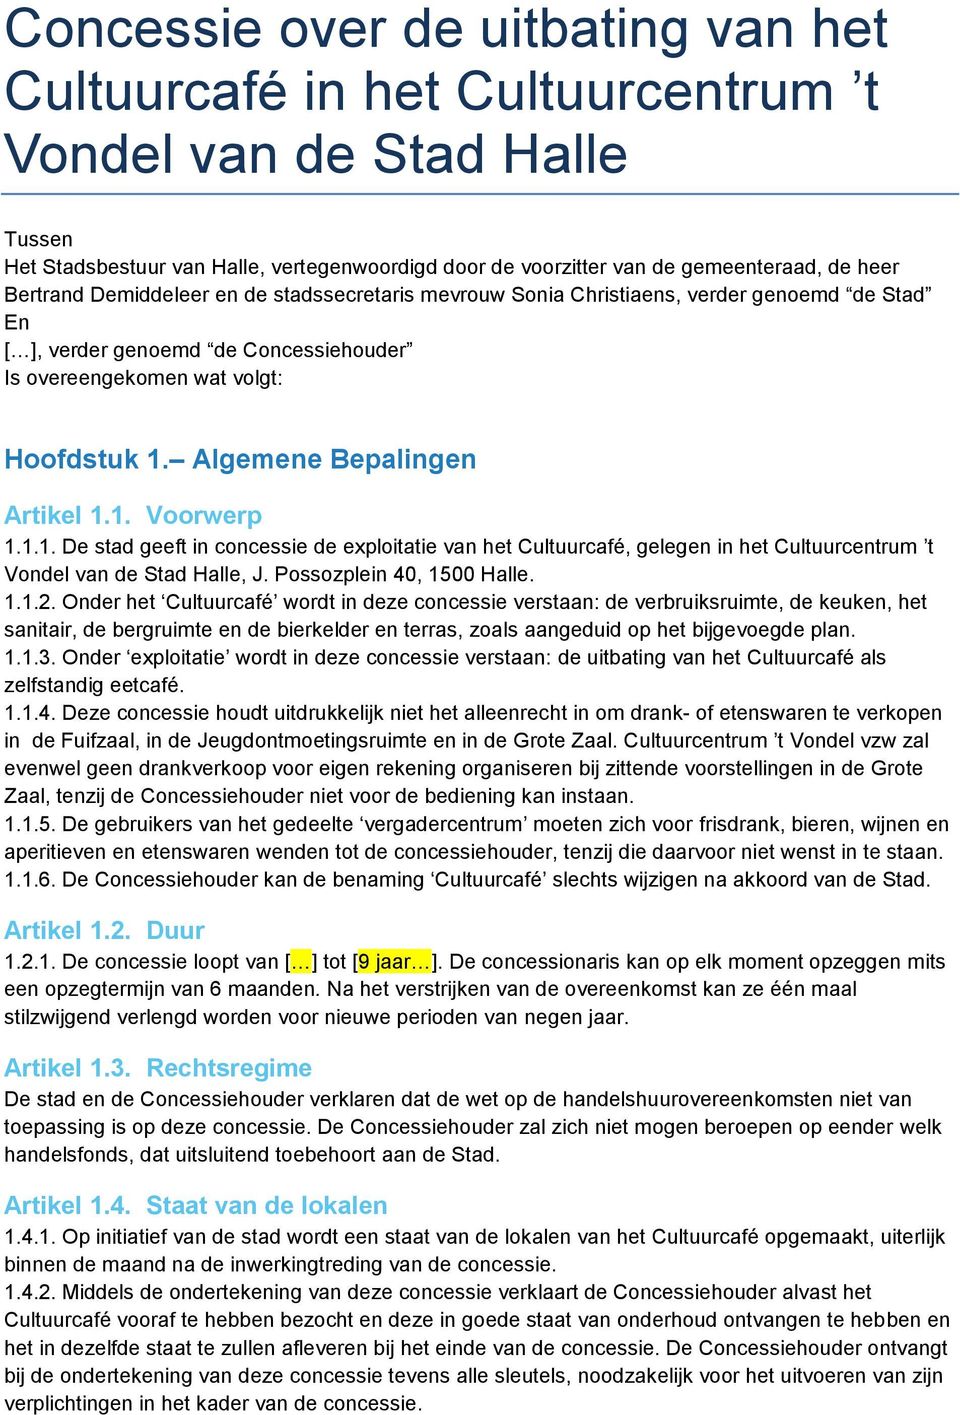 Algemene Bepalingen Artikel 1.1. Voorwerp 1.1.1. De stad geeft in concessie de exploitatie van het Cultuurcafé, gelegen in het Cultuurcentrum t Vondel van de Stad Halle, J. Possozplein 40, 1500 Halle.